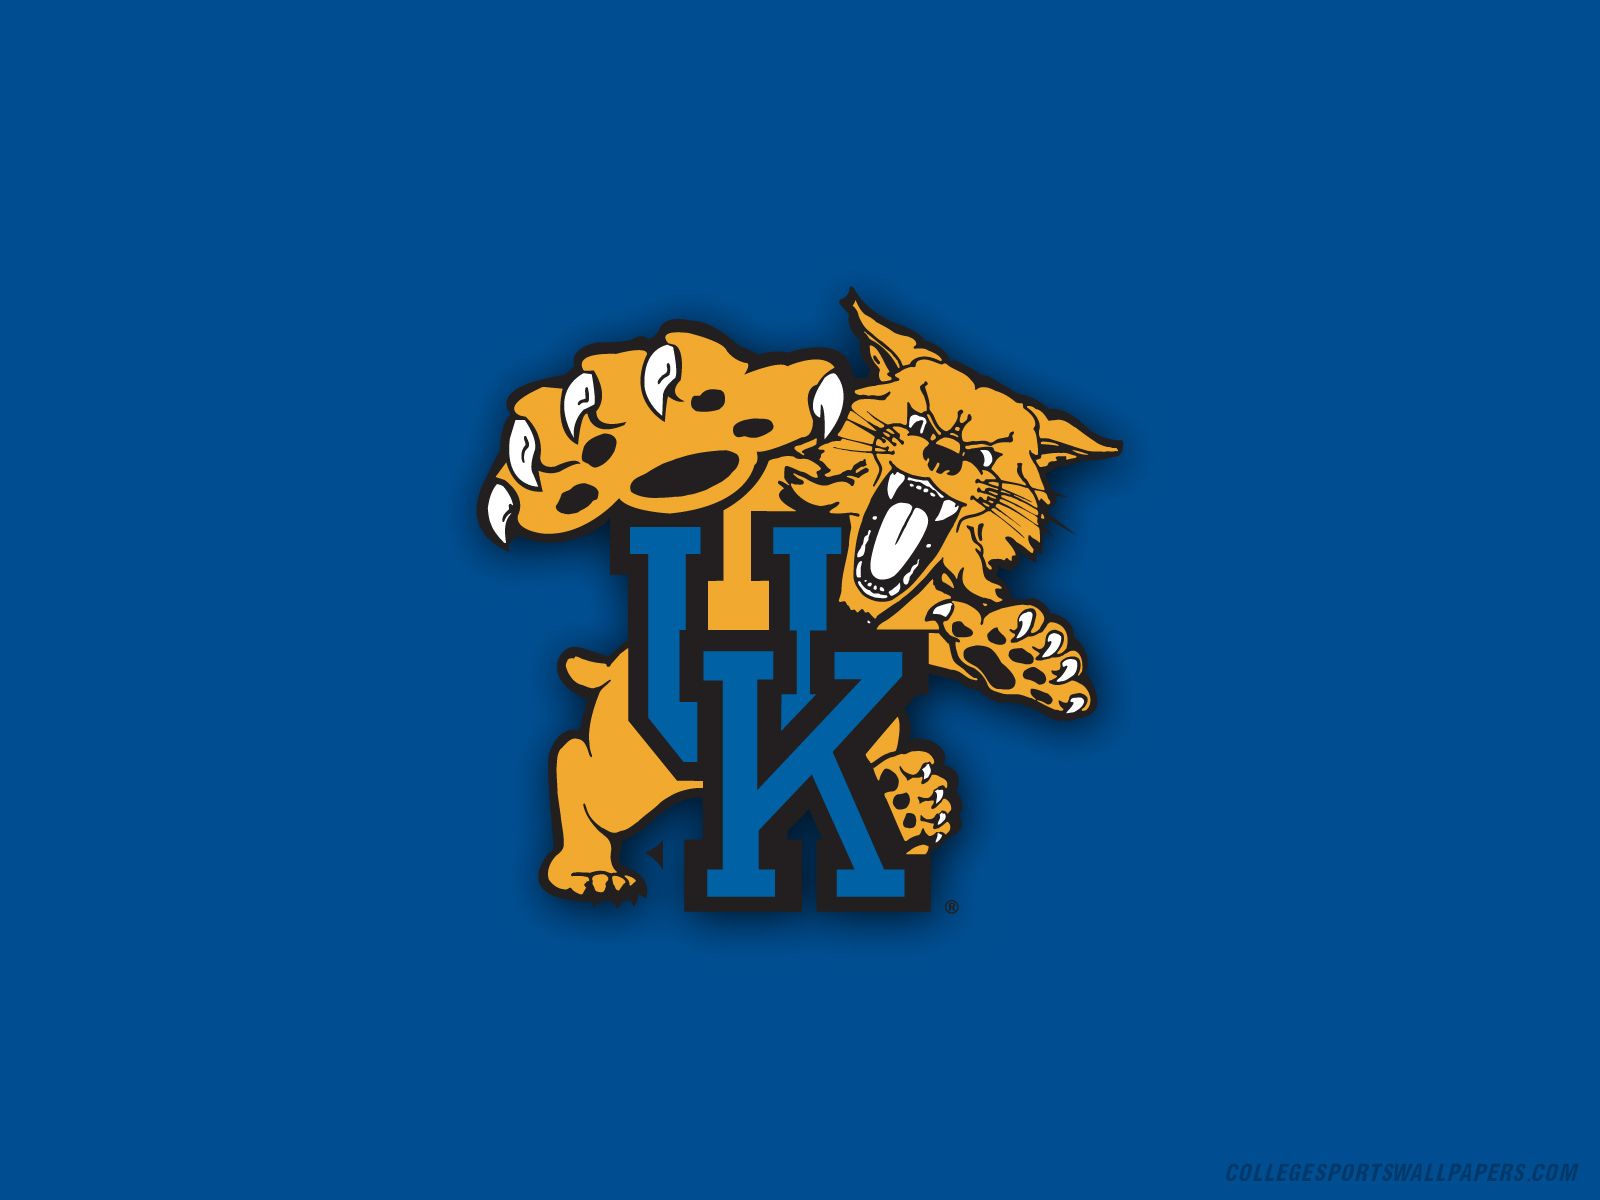 Uk logo - Kentucky Wildcats Wallpaper (9587260) - Fanpop